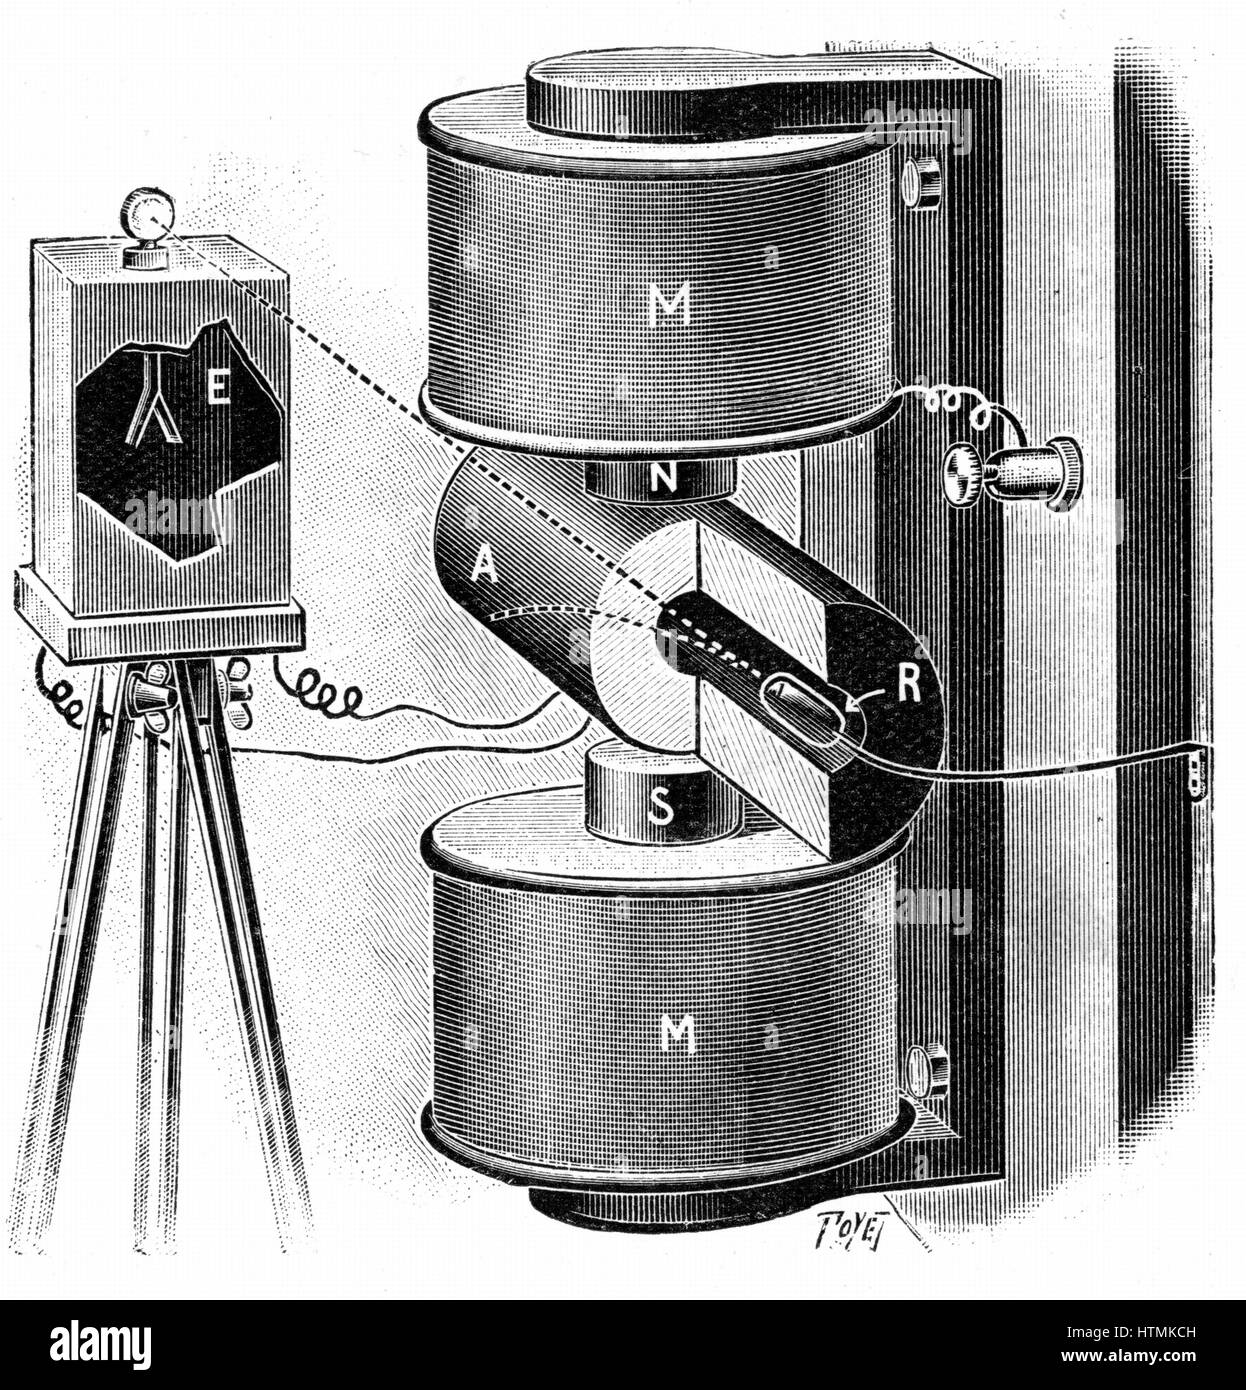 Aparato utilizado por los Curie para investigar la deflexión de los rayos beta de radio (R) en el campo magnético. Grabado publicado en París 1904 Foto de stock